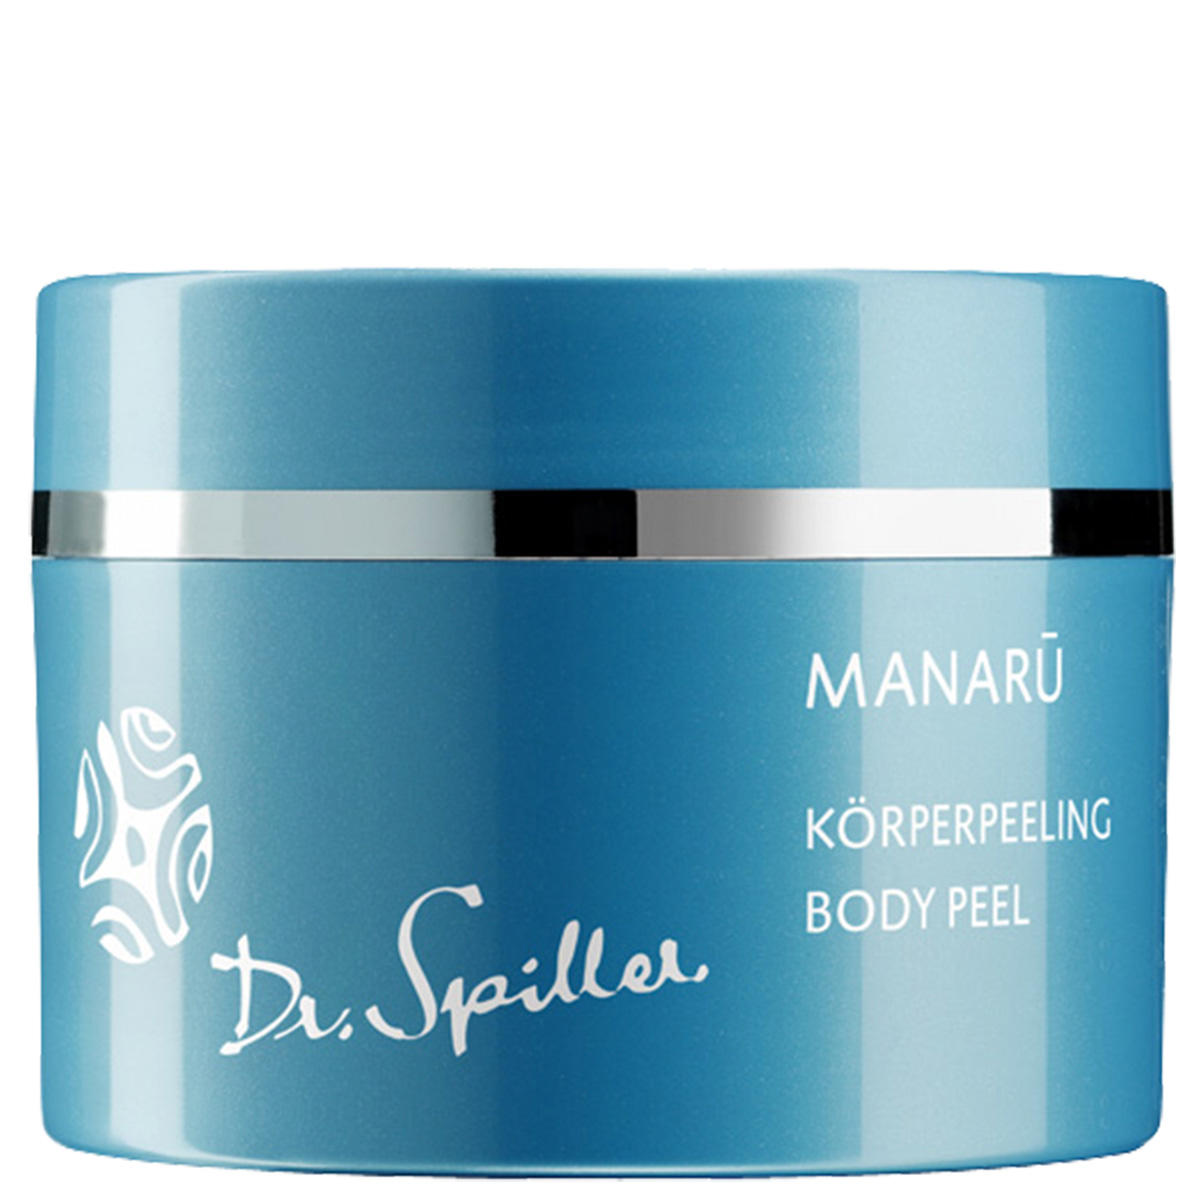 Dr. Spiller Biomimetic SkinCare MANARU Körperpeeling 250 ml - 1